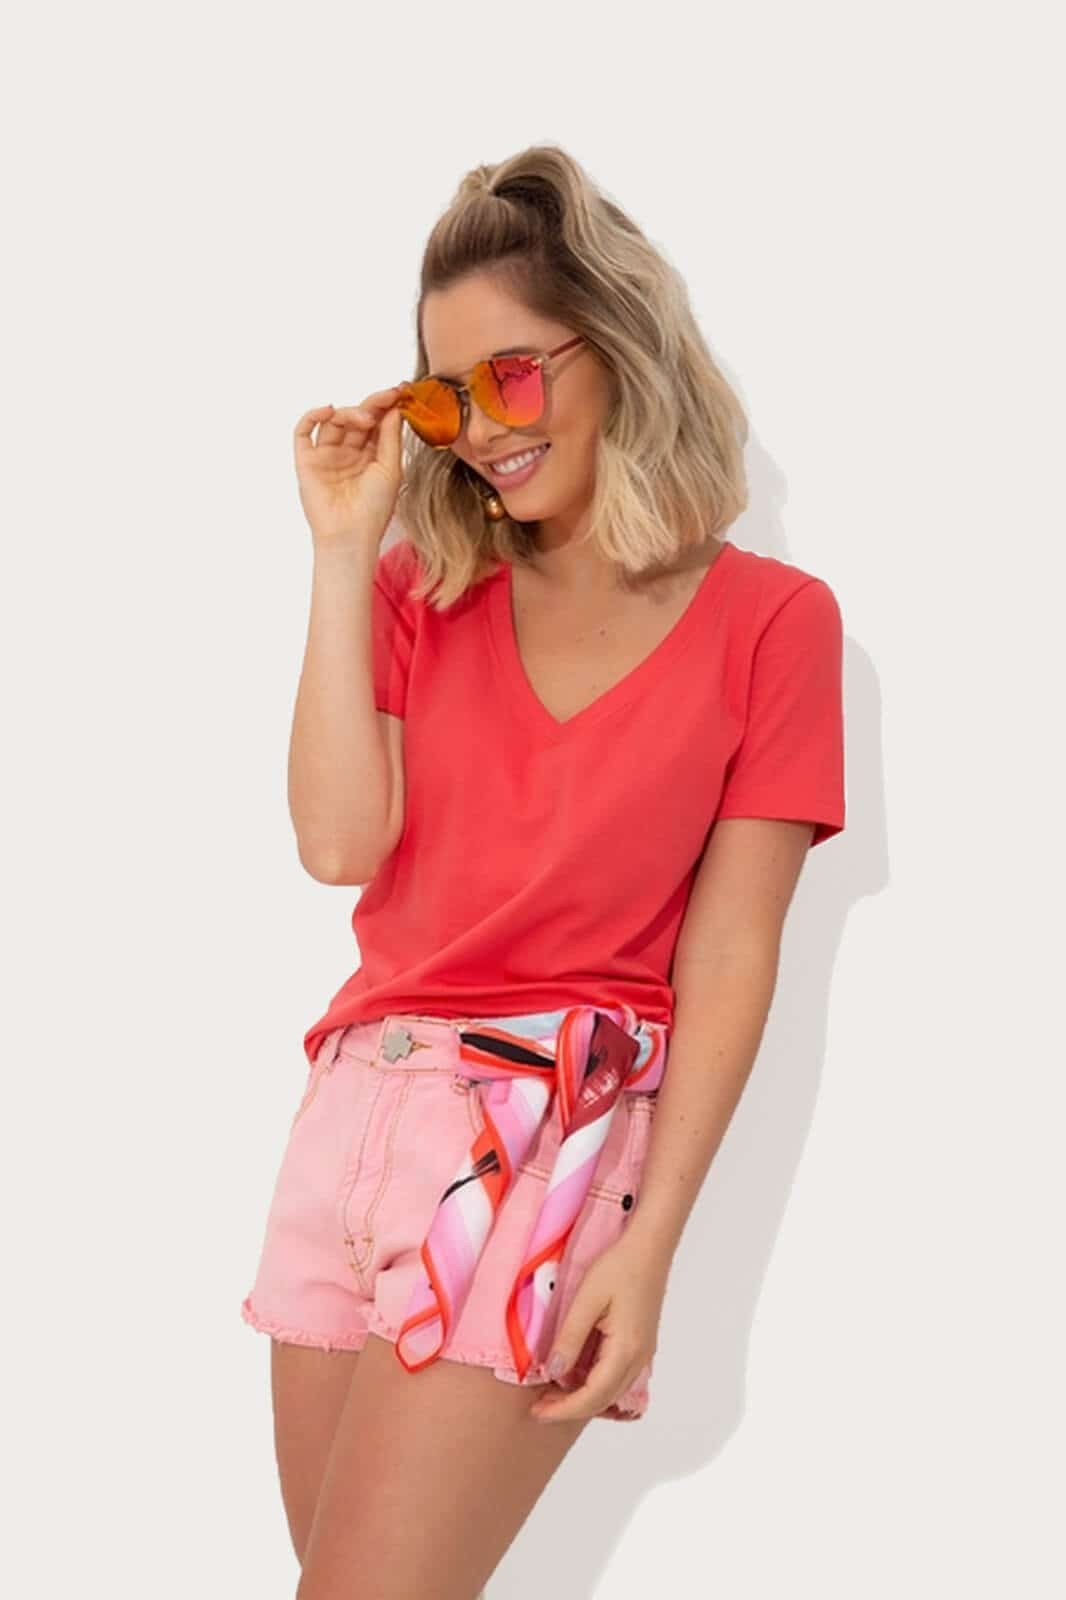 T-Shirt Comfy Algodão Premium Decote V Coral